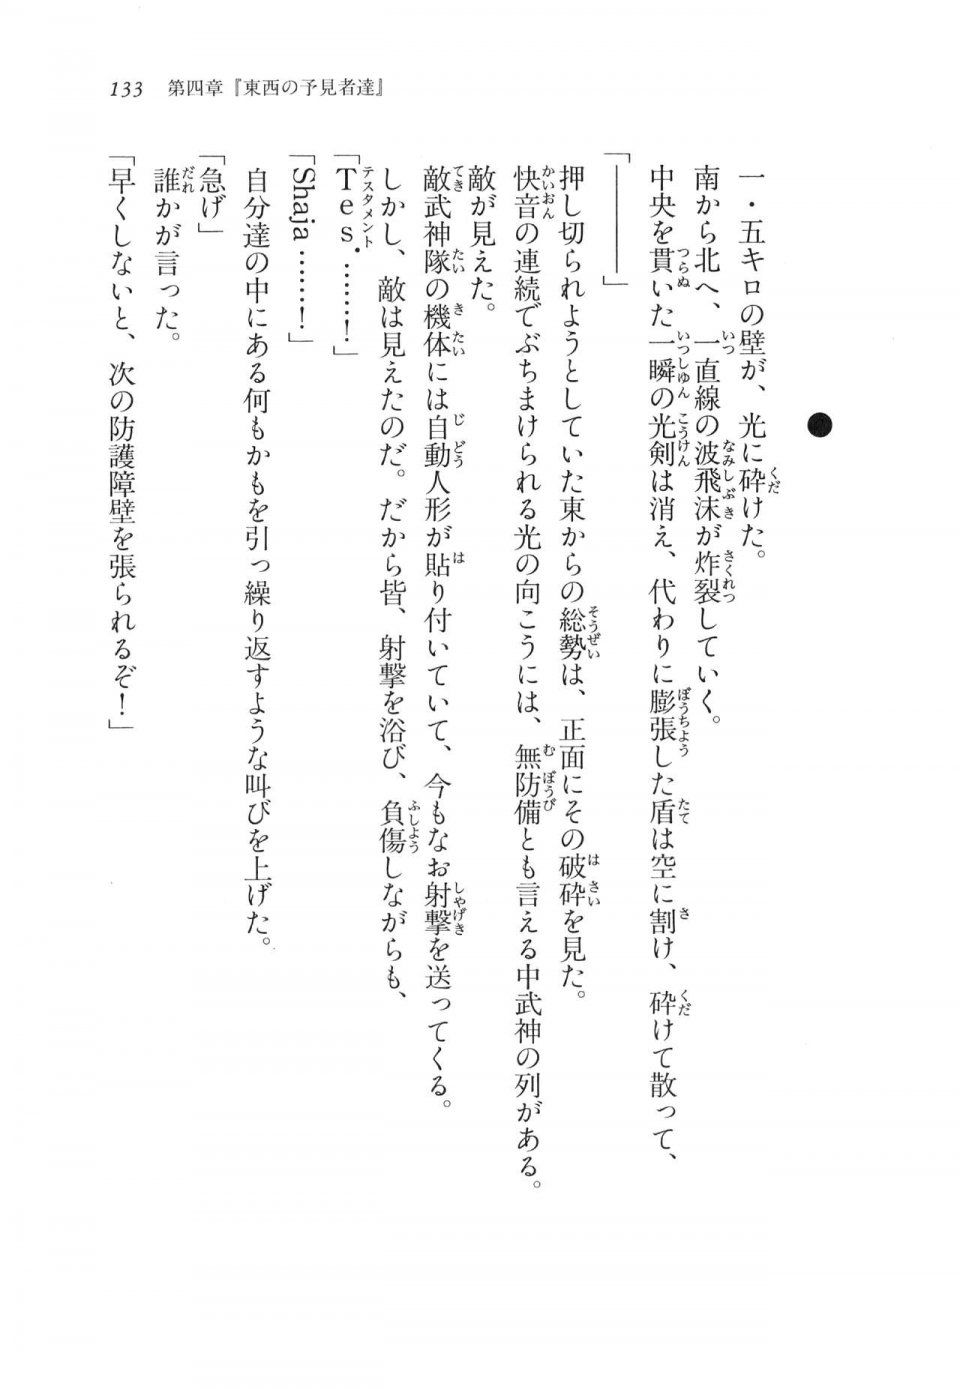 Kyoukai Senjou no Horizon LN Vol 11(5A) - Photo #133